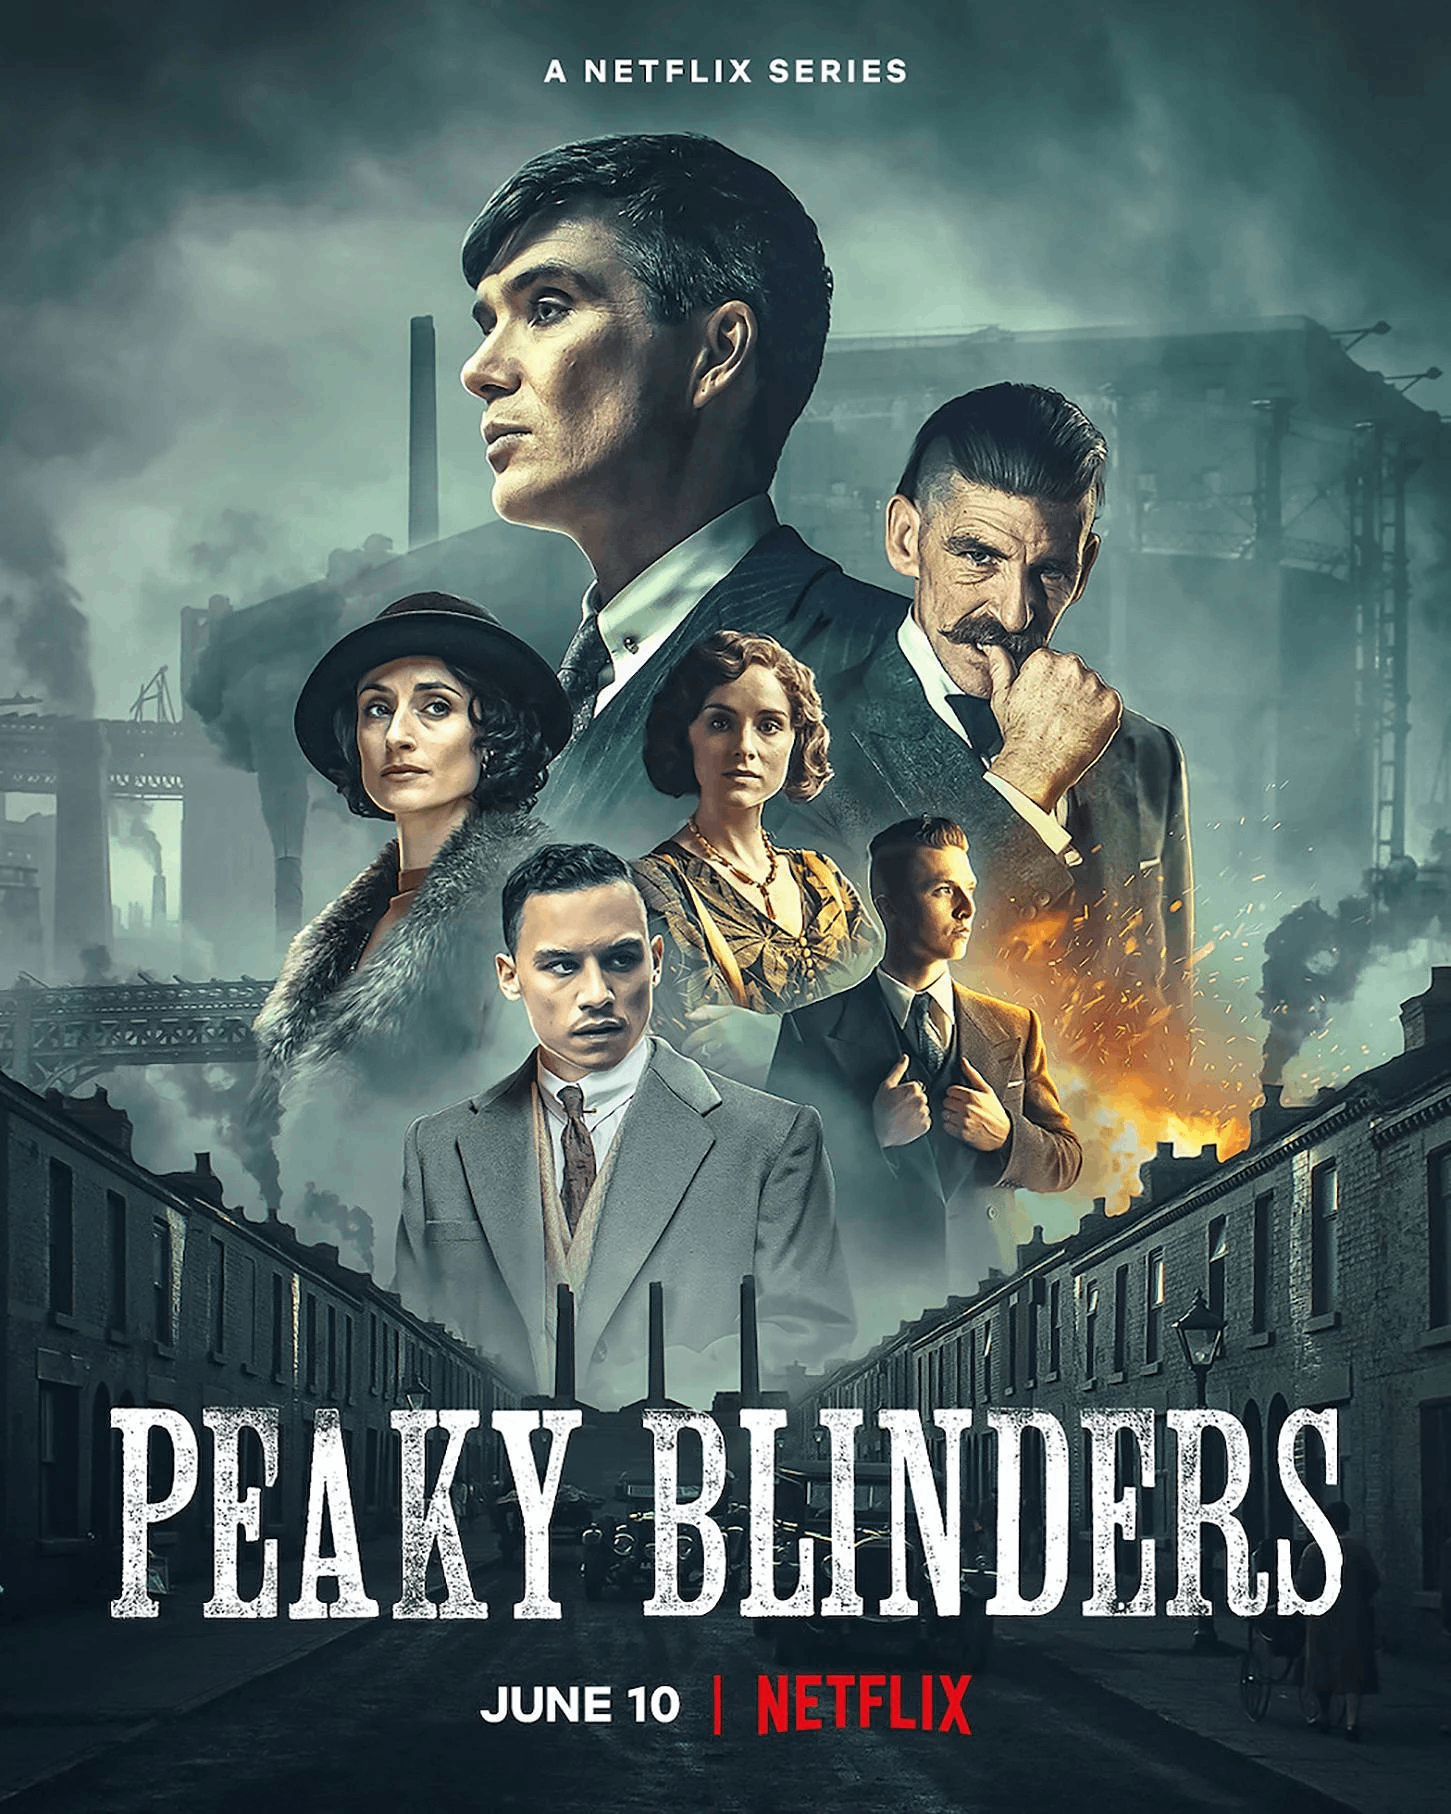 The Peaky Blinders series poster